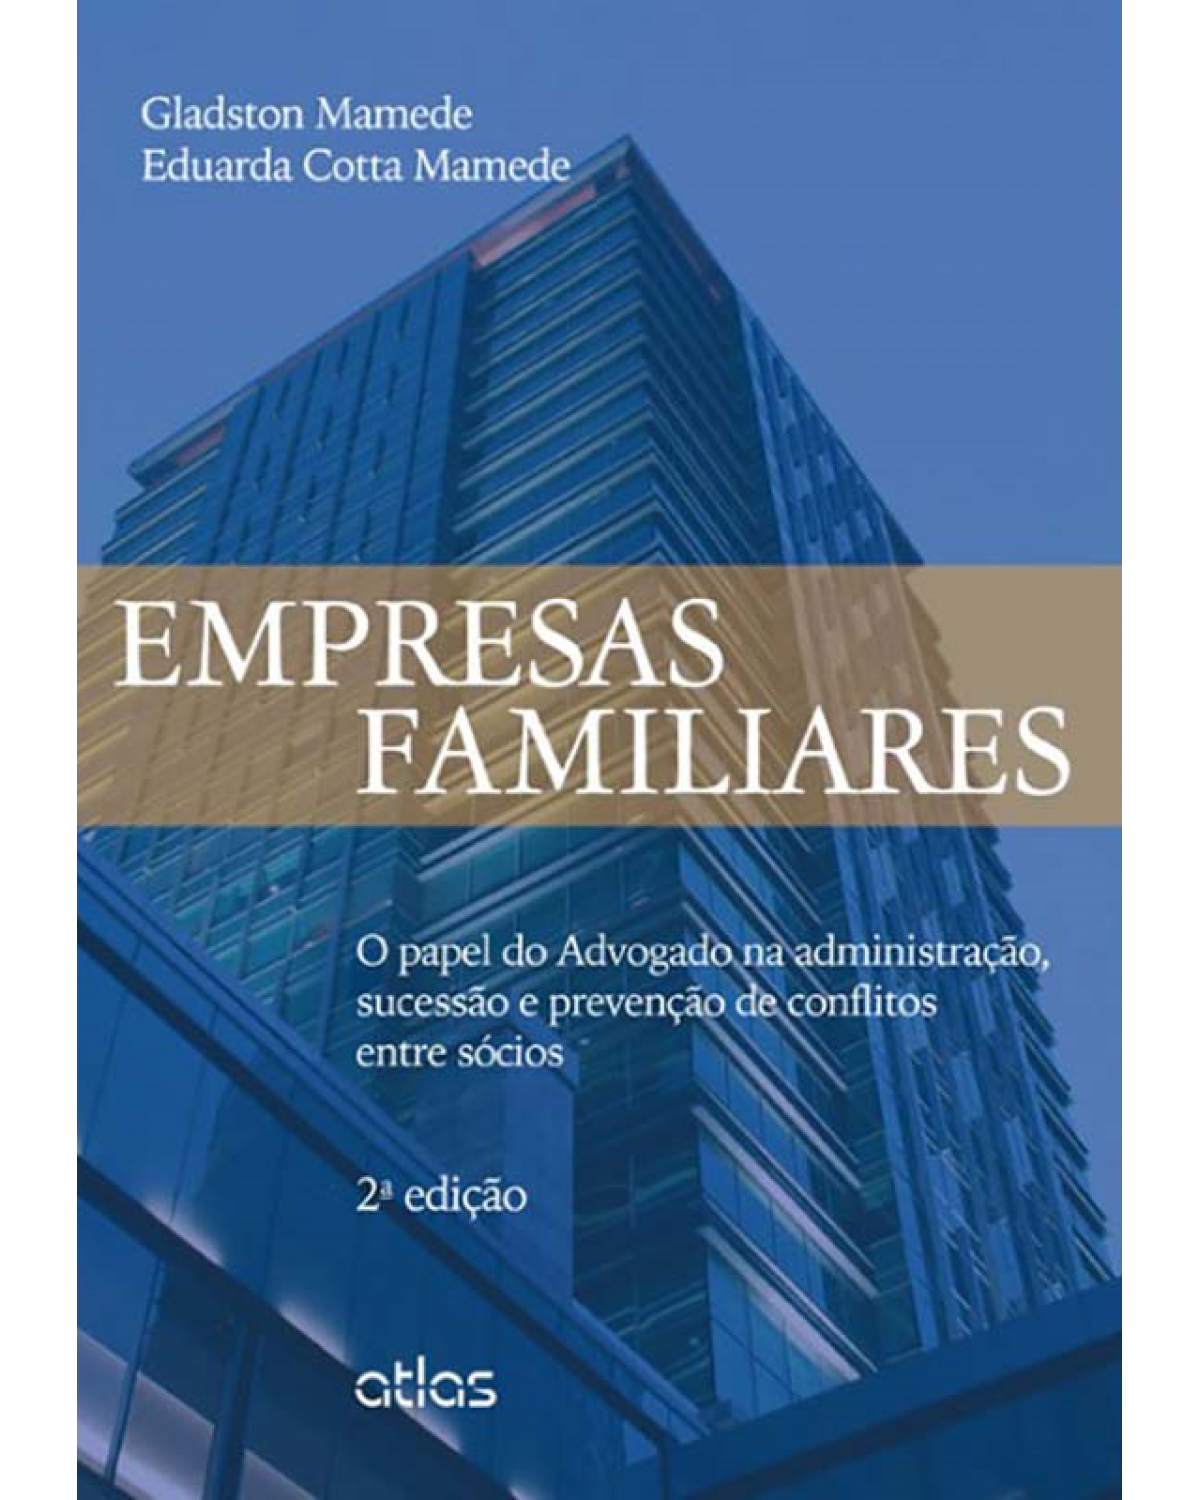 Empresas familiares - O papel do advogado na administração, sucessão e prevenção de conflitos entre sócios - 2ª Edição | 2014